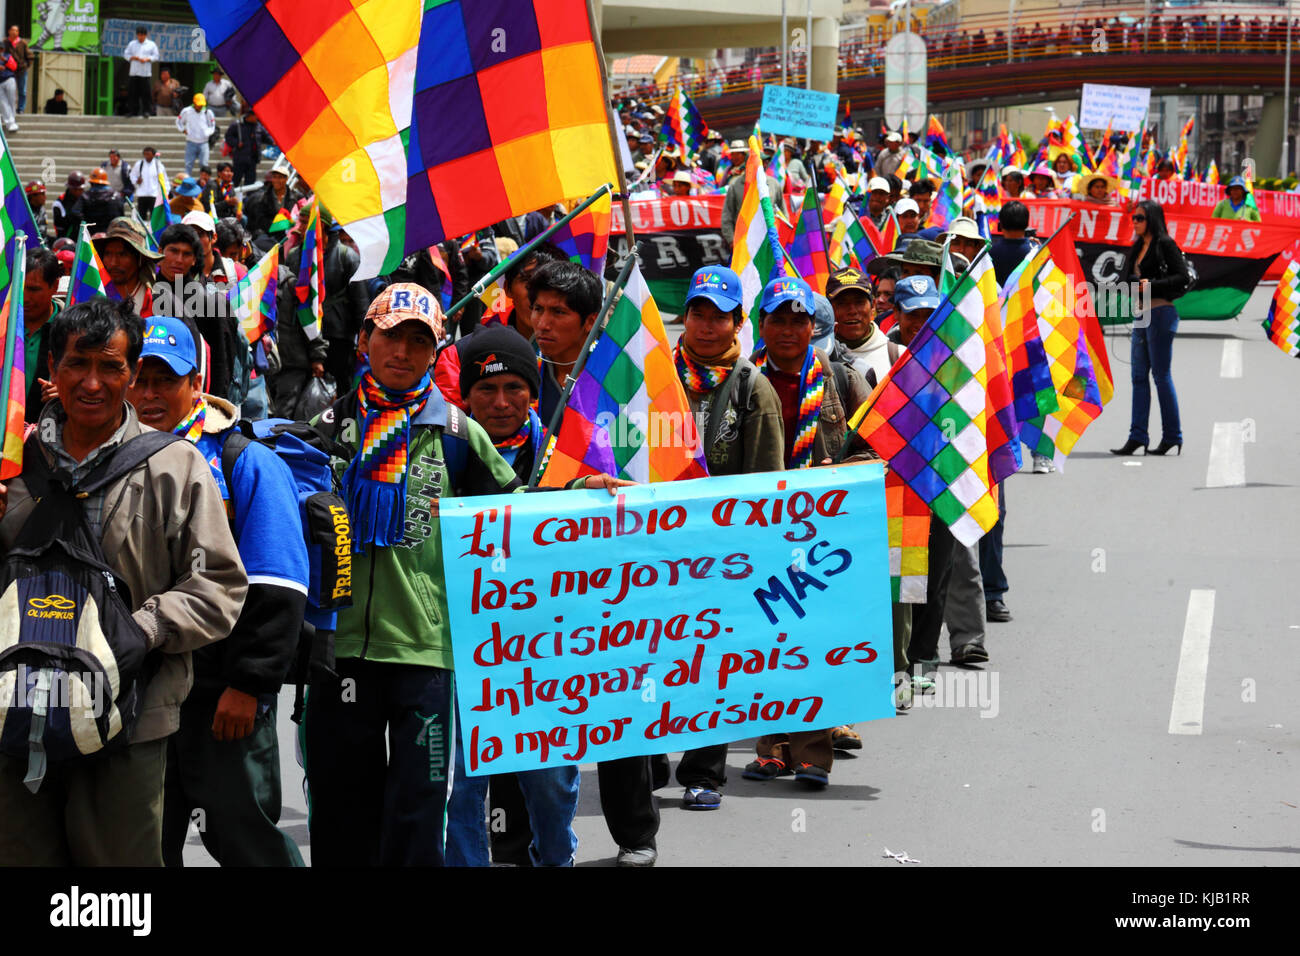 Les membres de divers mouvements sociaux prennent part à un gouvernement pro soutenir mars prévoit de construire une route à travers la région TIPNIS, La Paz, Bolivie Banque D'Images